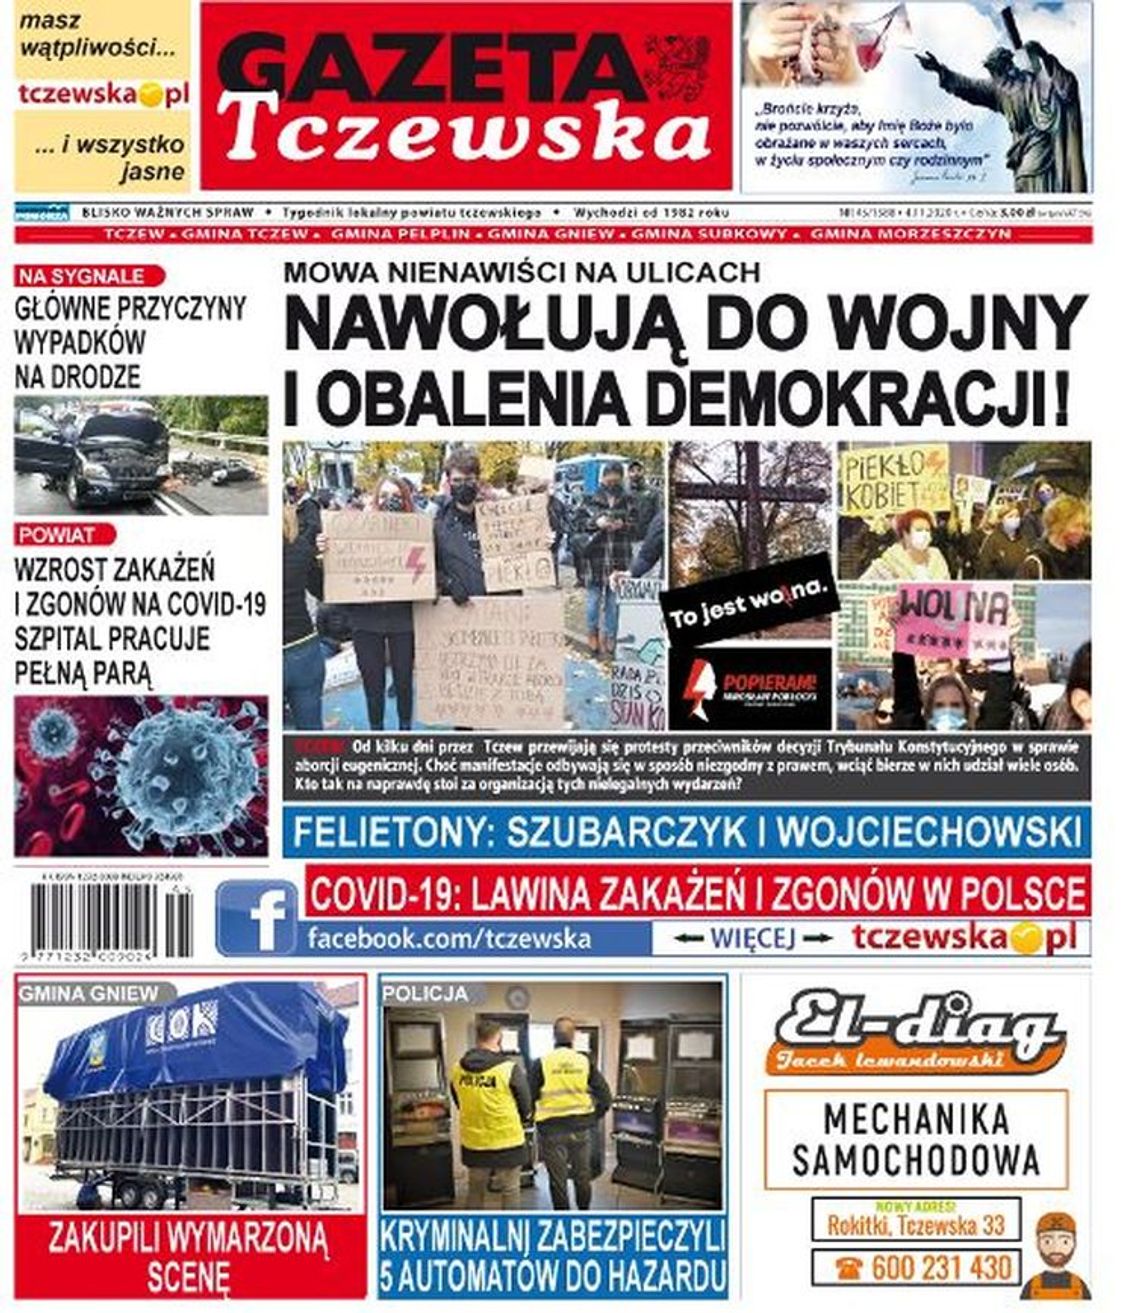 Nowy numer Gazety Tczewskiej już w sprzedaży!!! Najświeższe wiadomości z Tczewa i gmina naszego powiatu dostępne w Twoim kiosku. Co w środku?